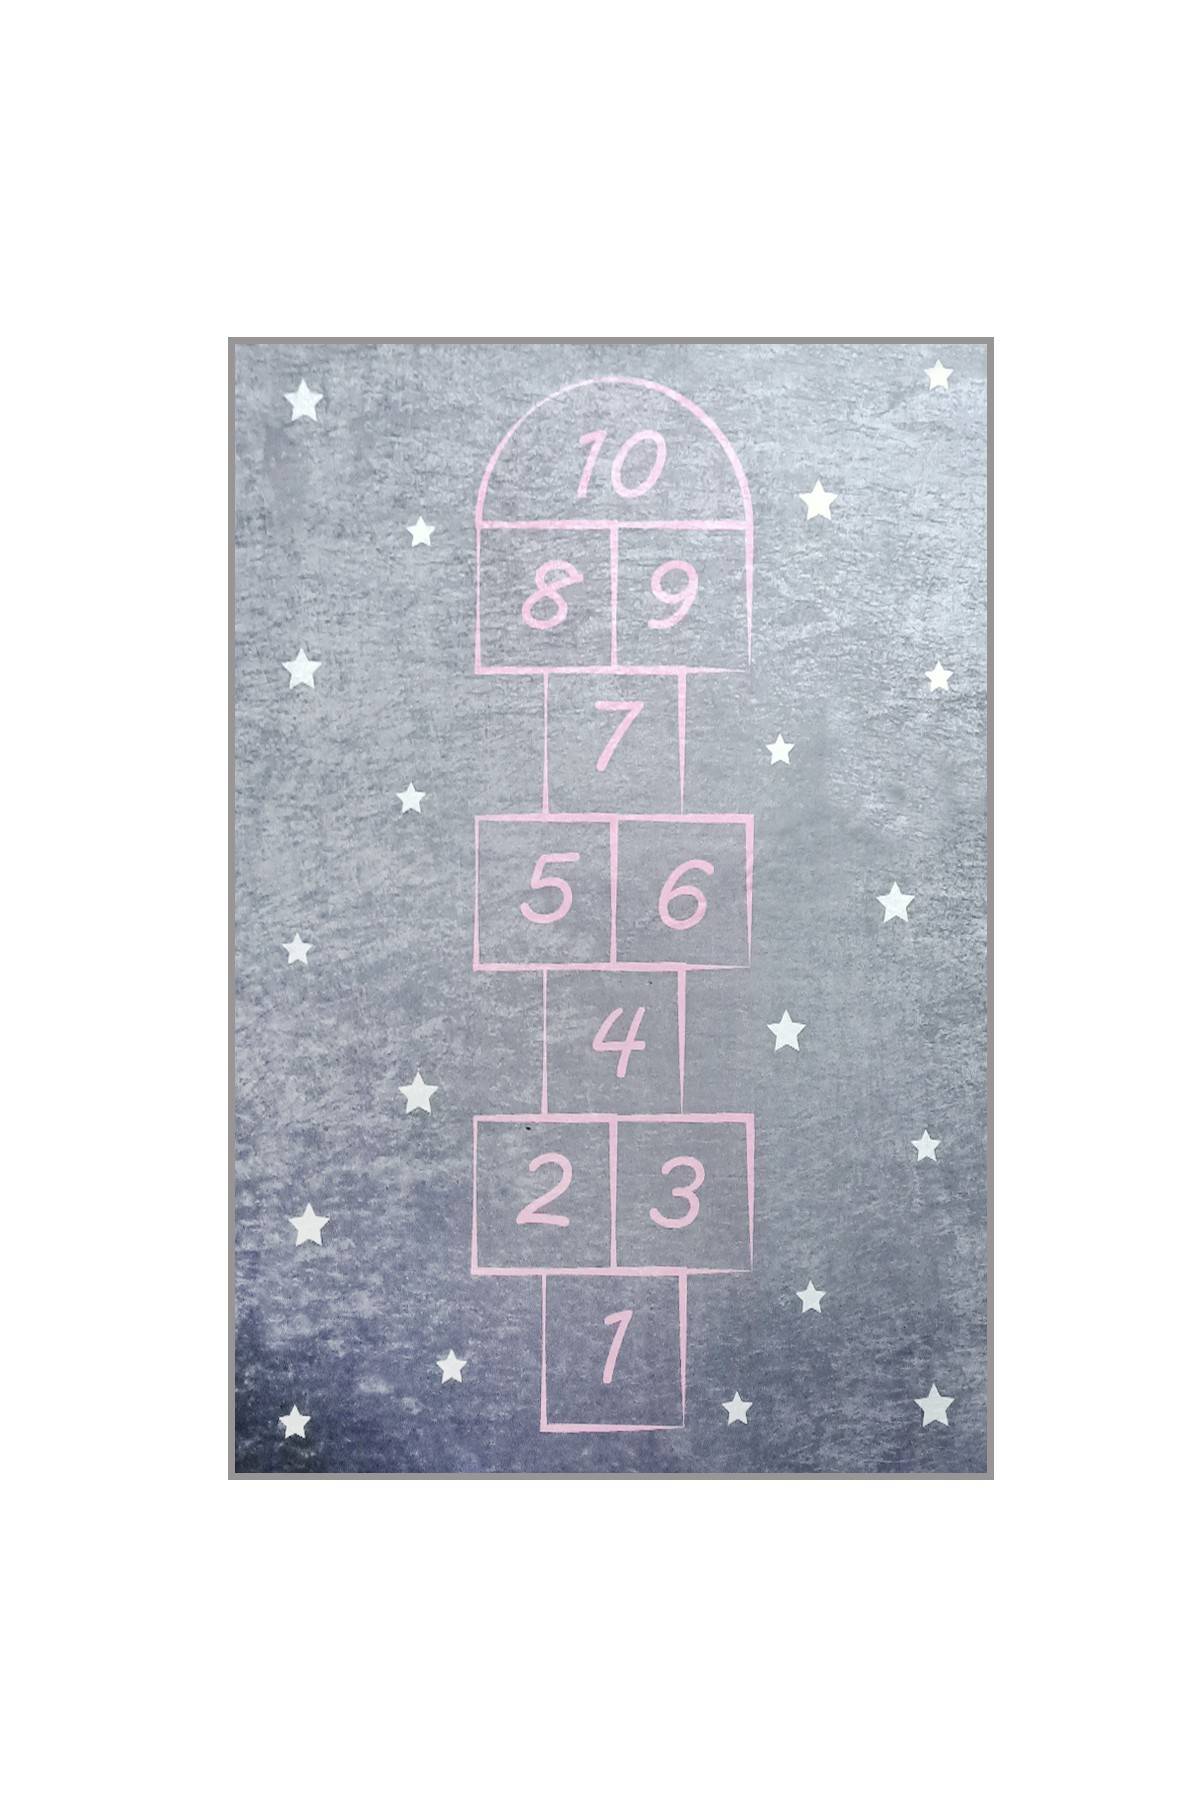 Tapijt Kiki 100x160cm Fluweel Vierkant patroon, sterren Donkergrijs en roze